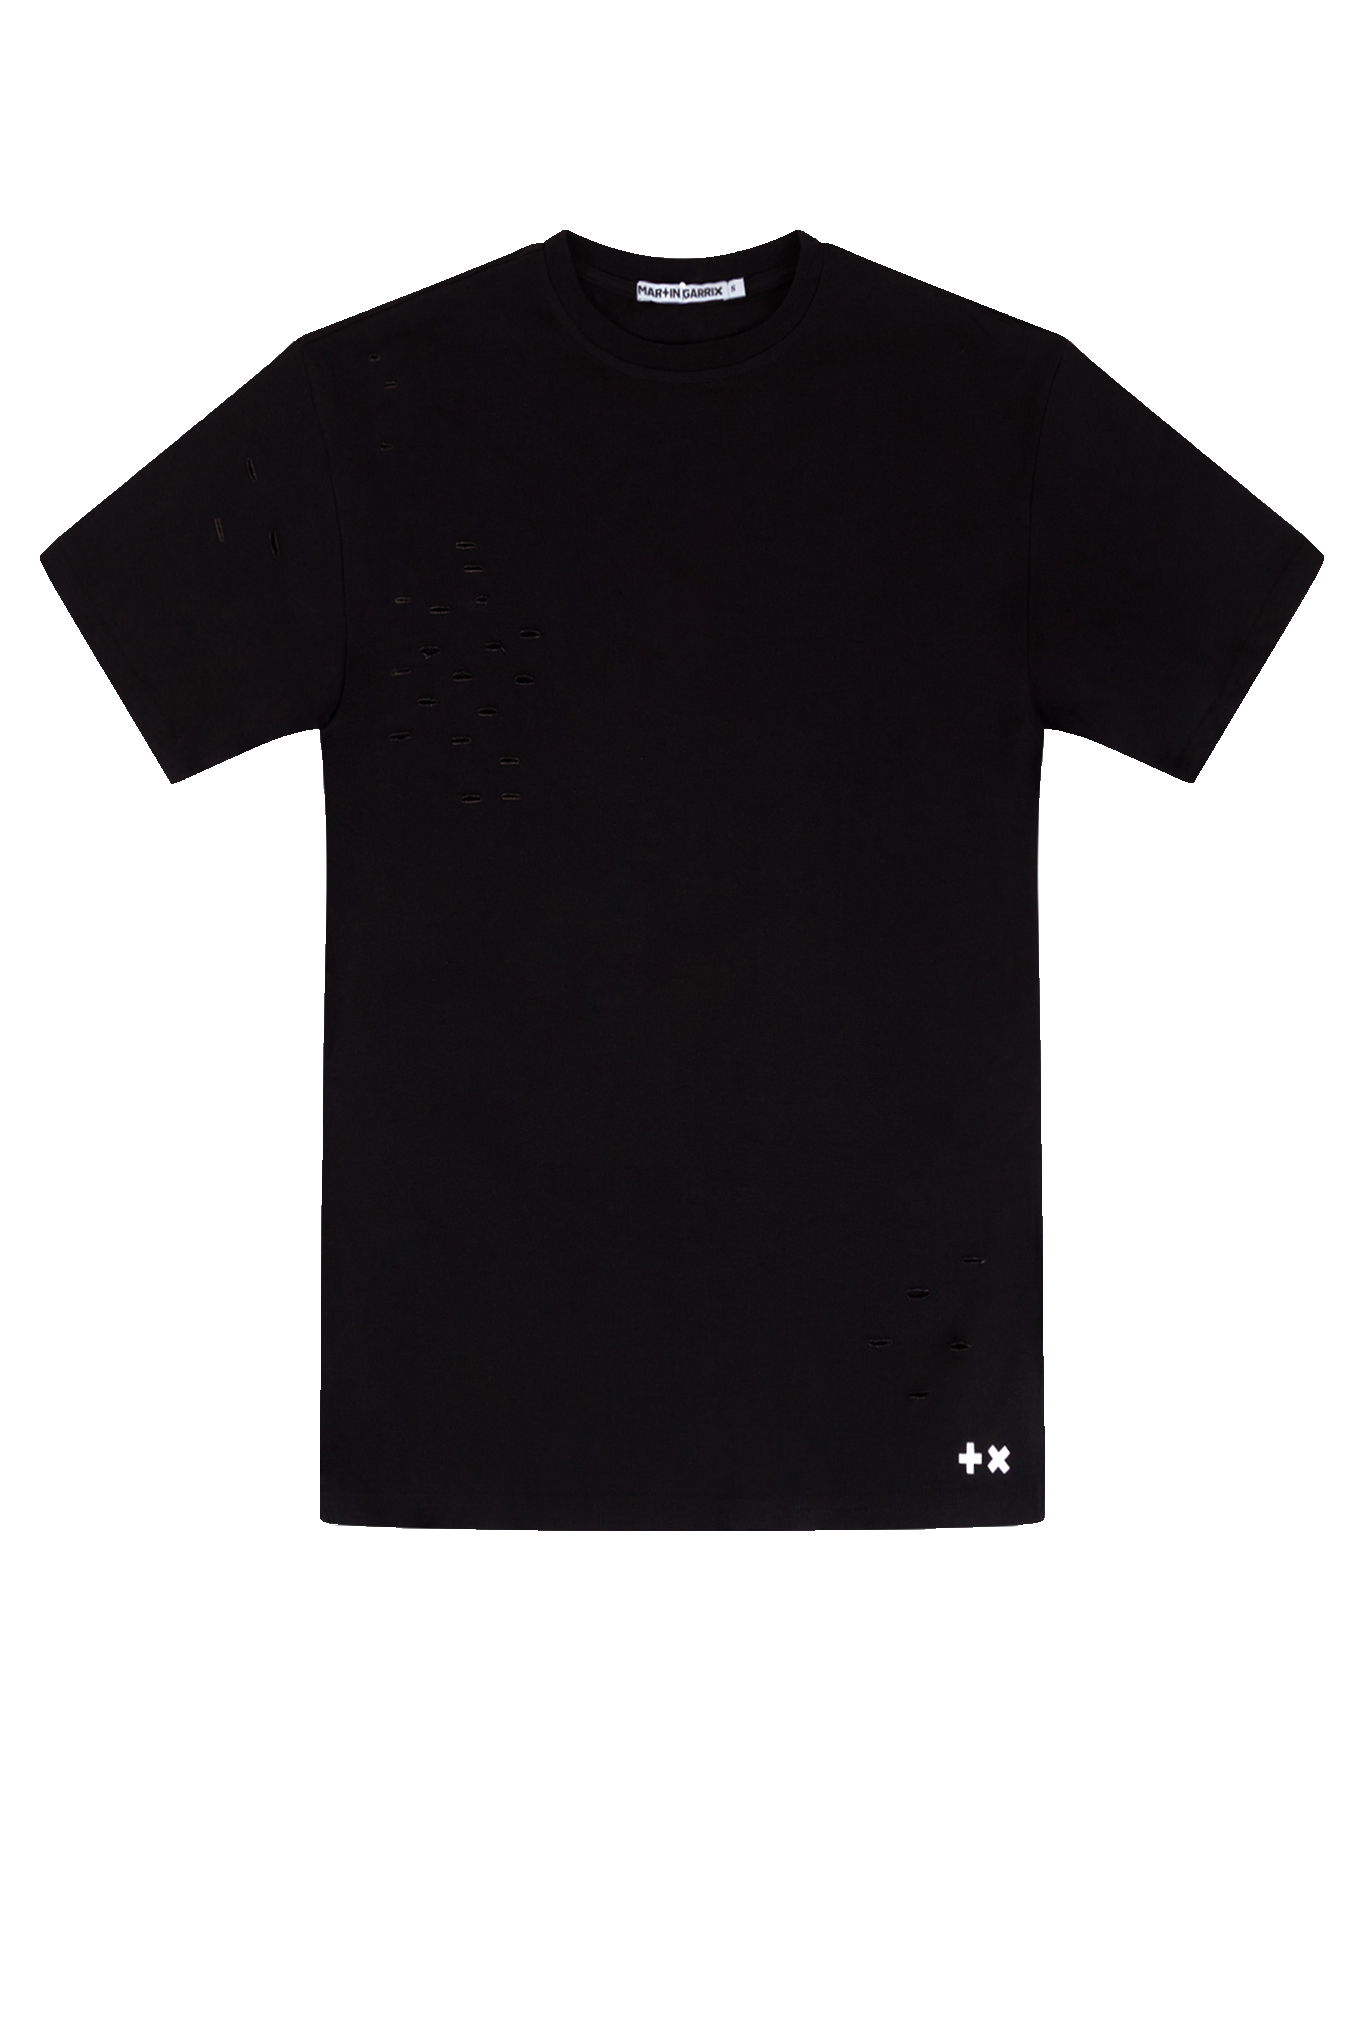 Shirt Black Background PNG Image